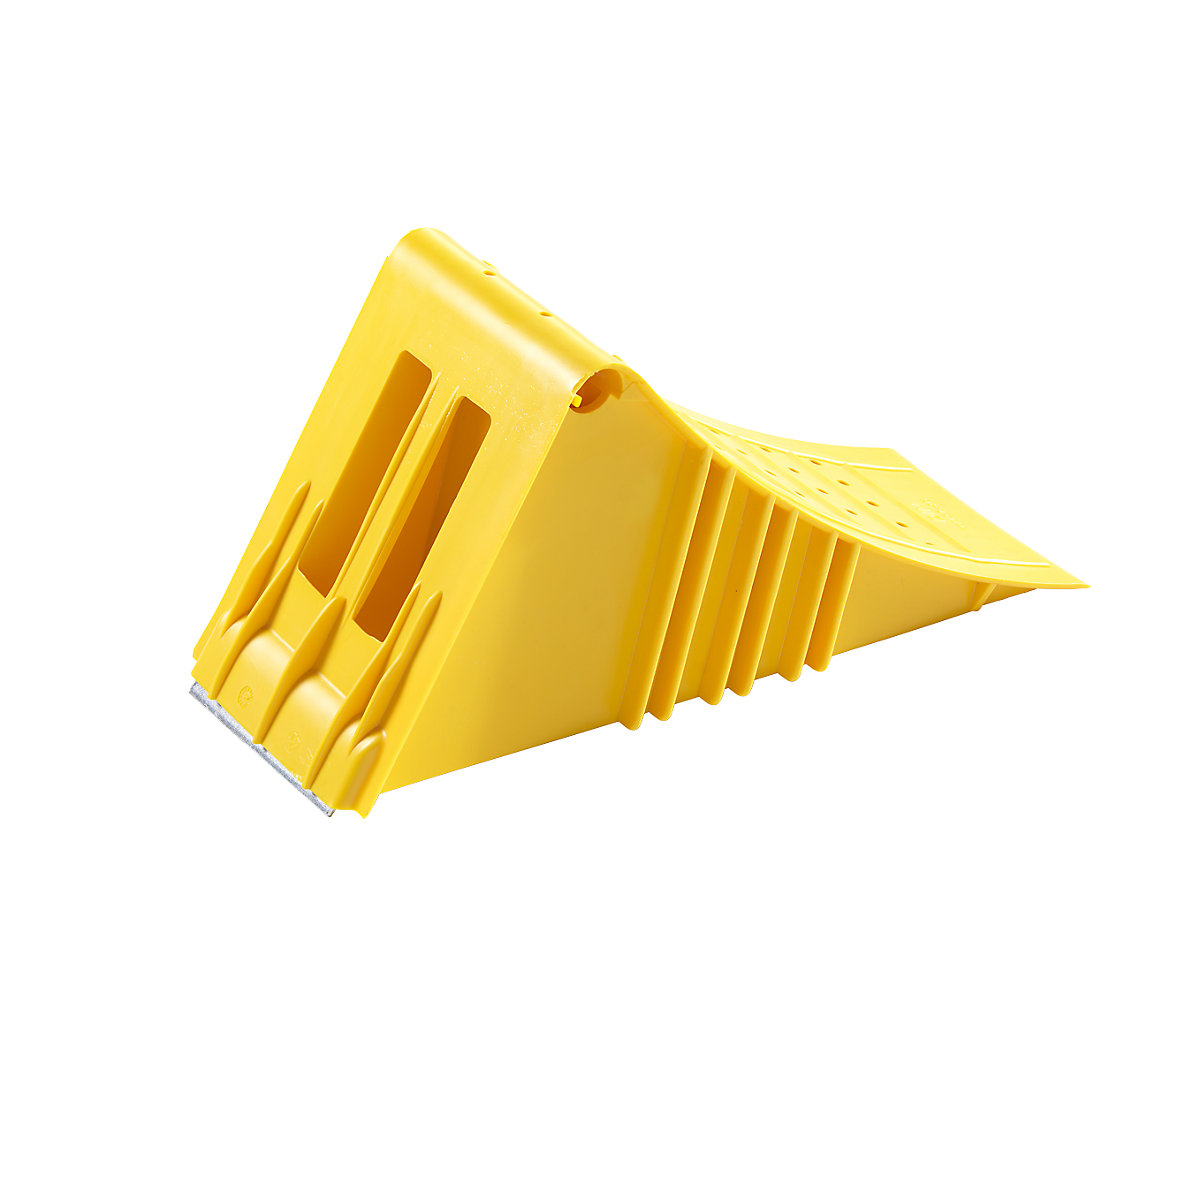 Klin za blokiranje kotača, u žutoj boji